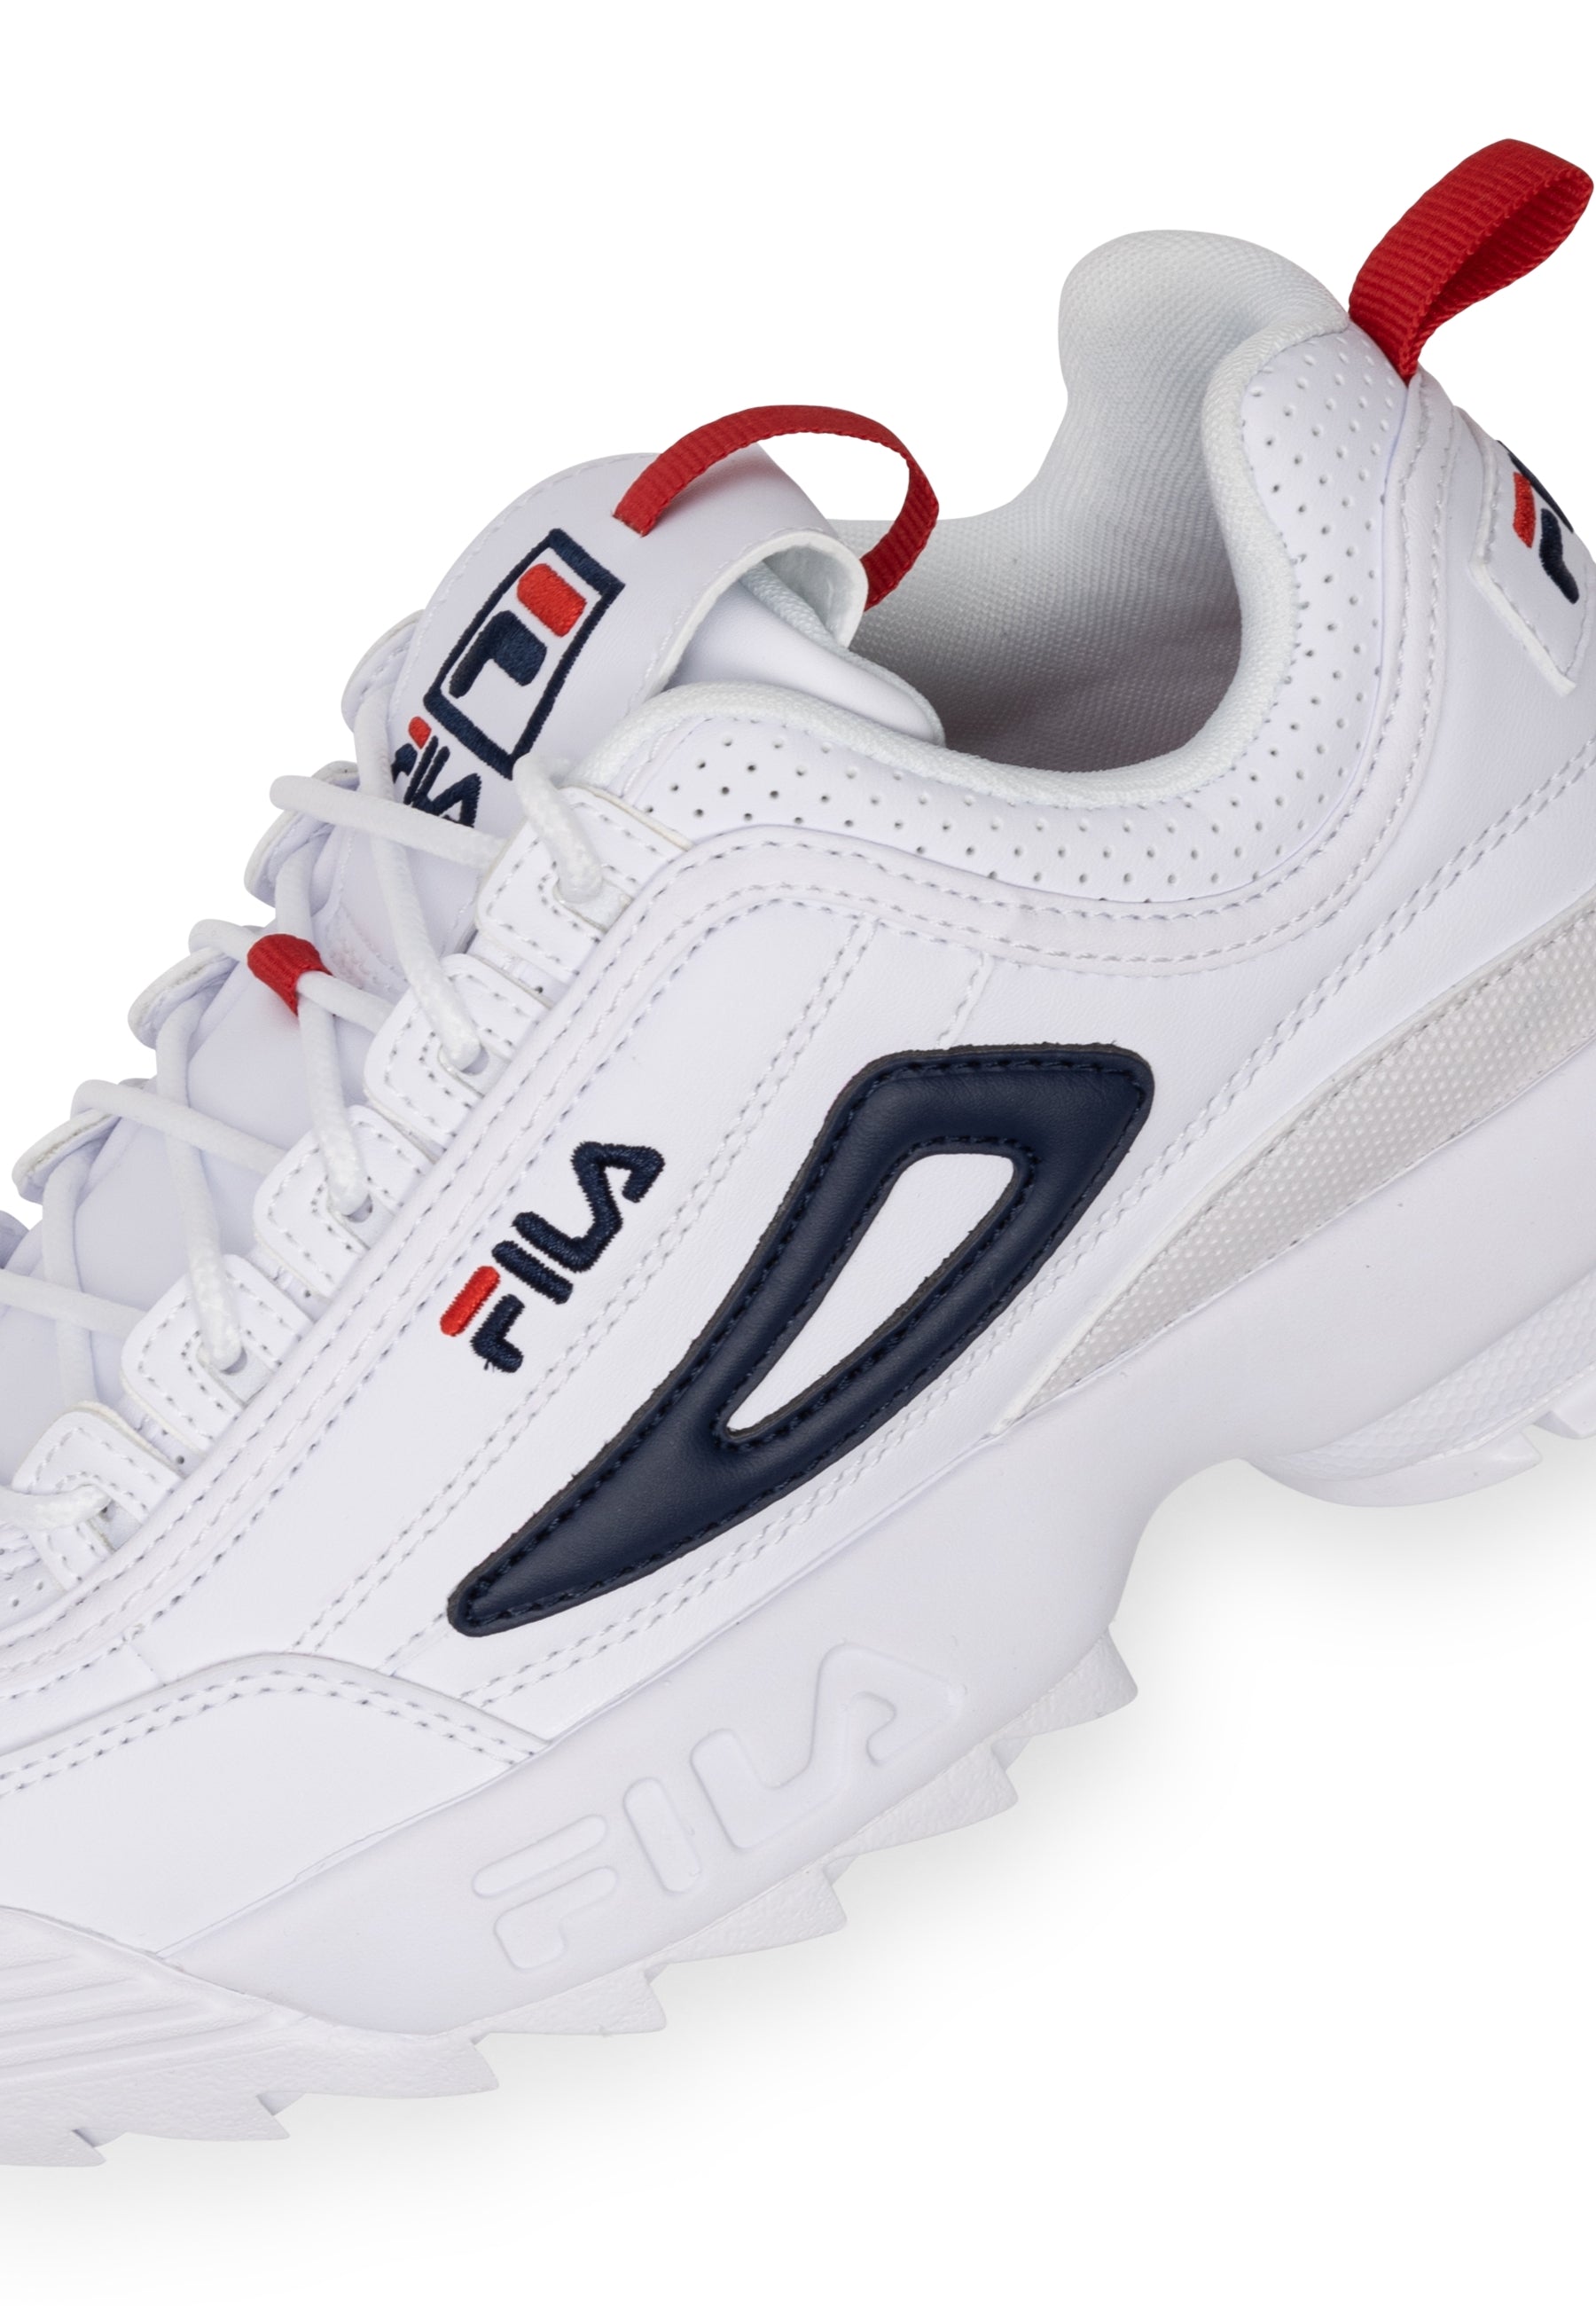 Disruptor CB Wmn in White-Fila Navy Sneakers Fila   